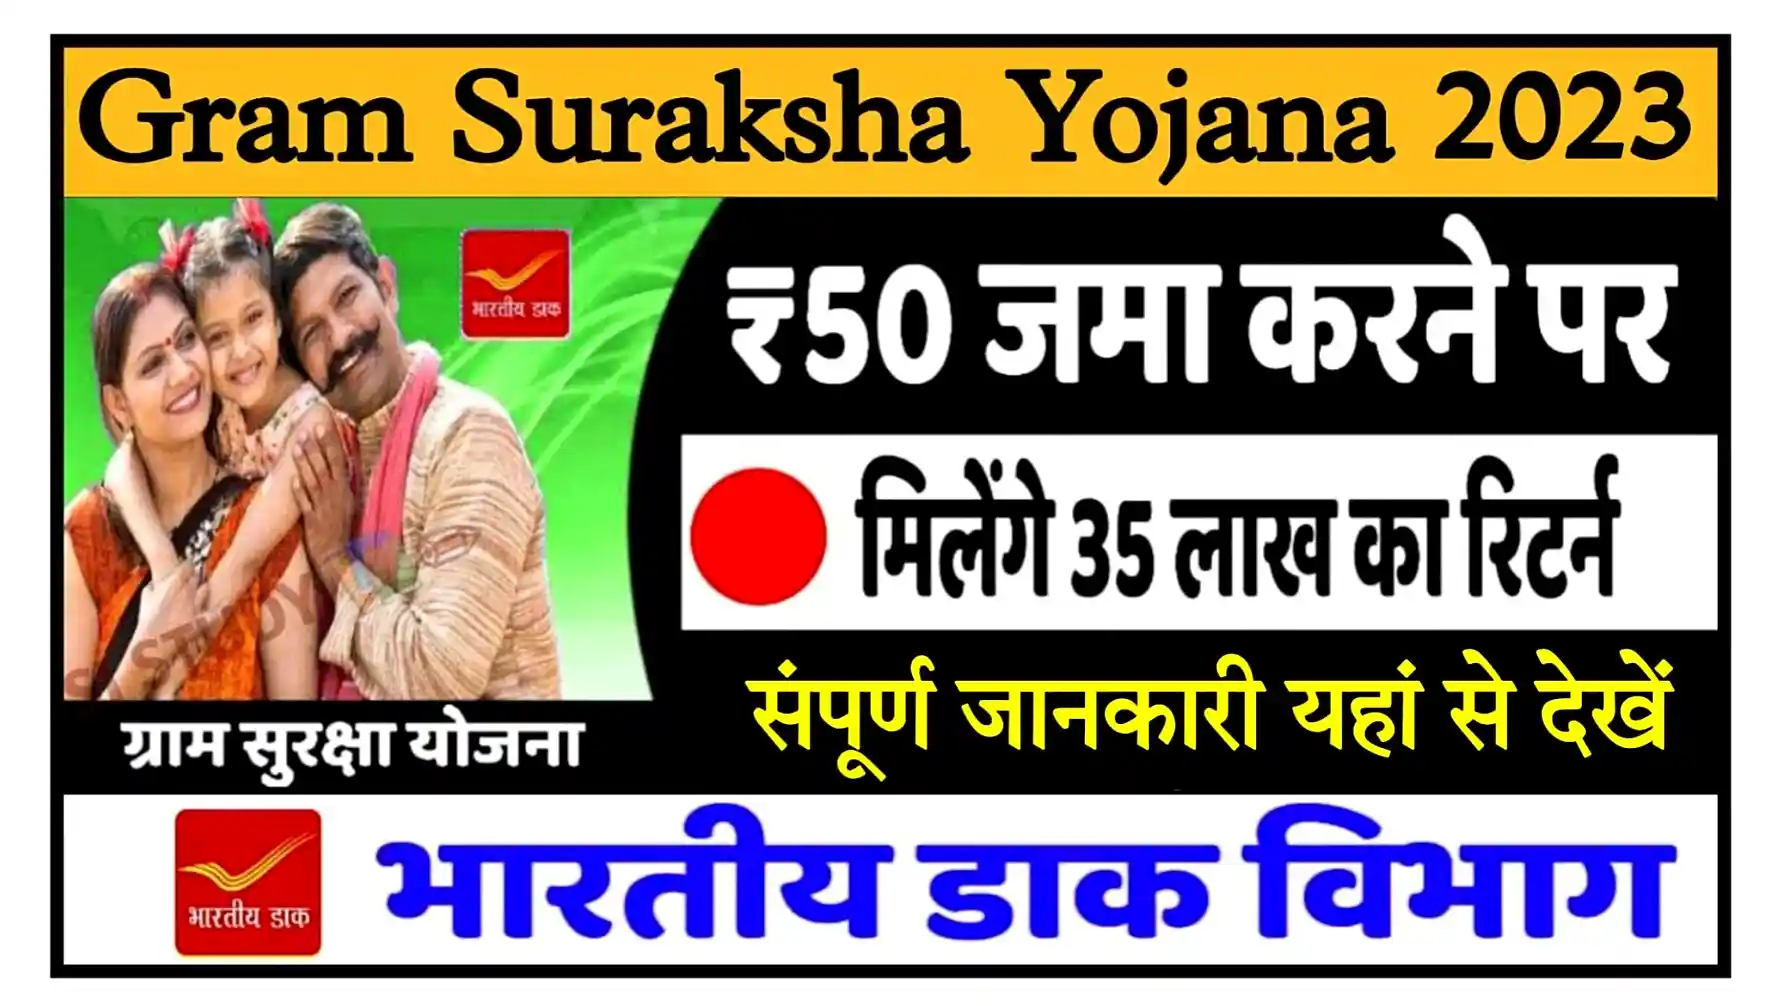 Gram Suraksha Yojana 2023 खुशखबरी योजना के तहत 50 रुपए जमा करें और 35 लाख रुपए का रिटर्न पाएं, संपूर्ण जानकारी देखें